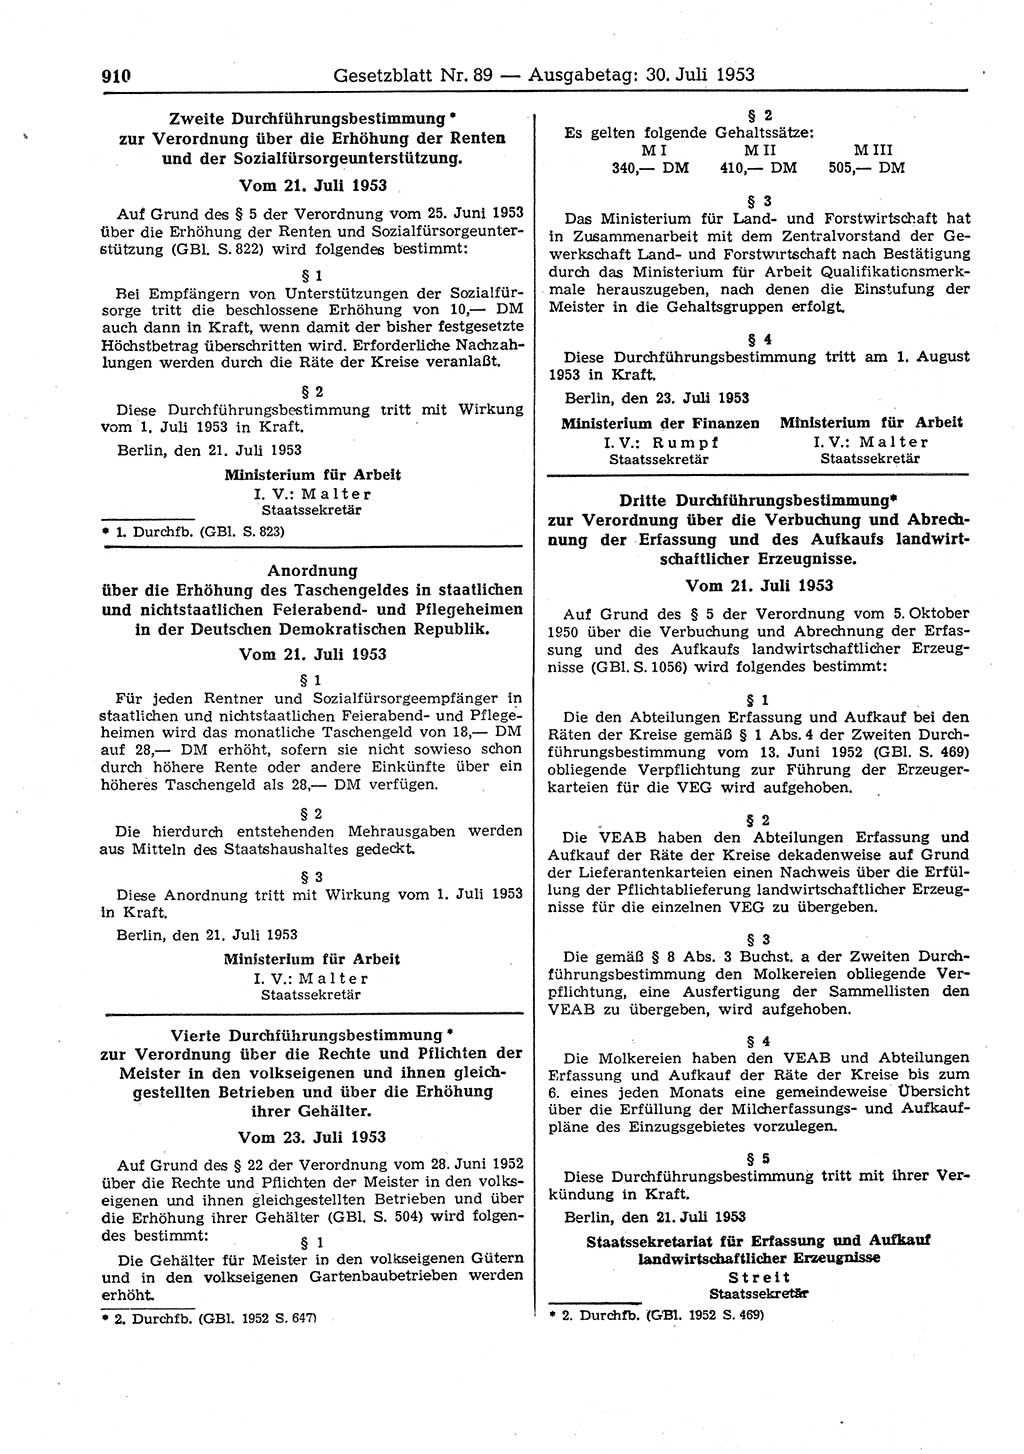 Gesetzblatt (GBl.) der Deutschen Demokratischen Republik (DDR) 1953, Seite 910 (GBl. DDR 1953, S. 910)